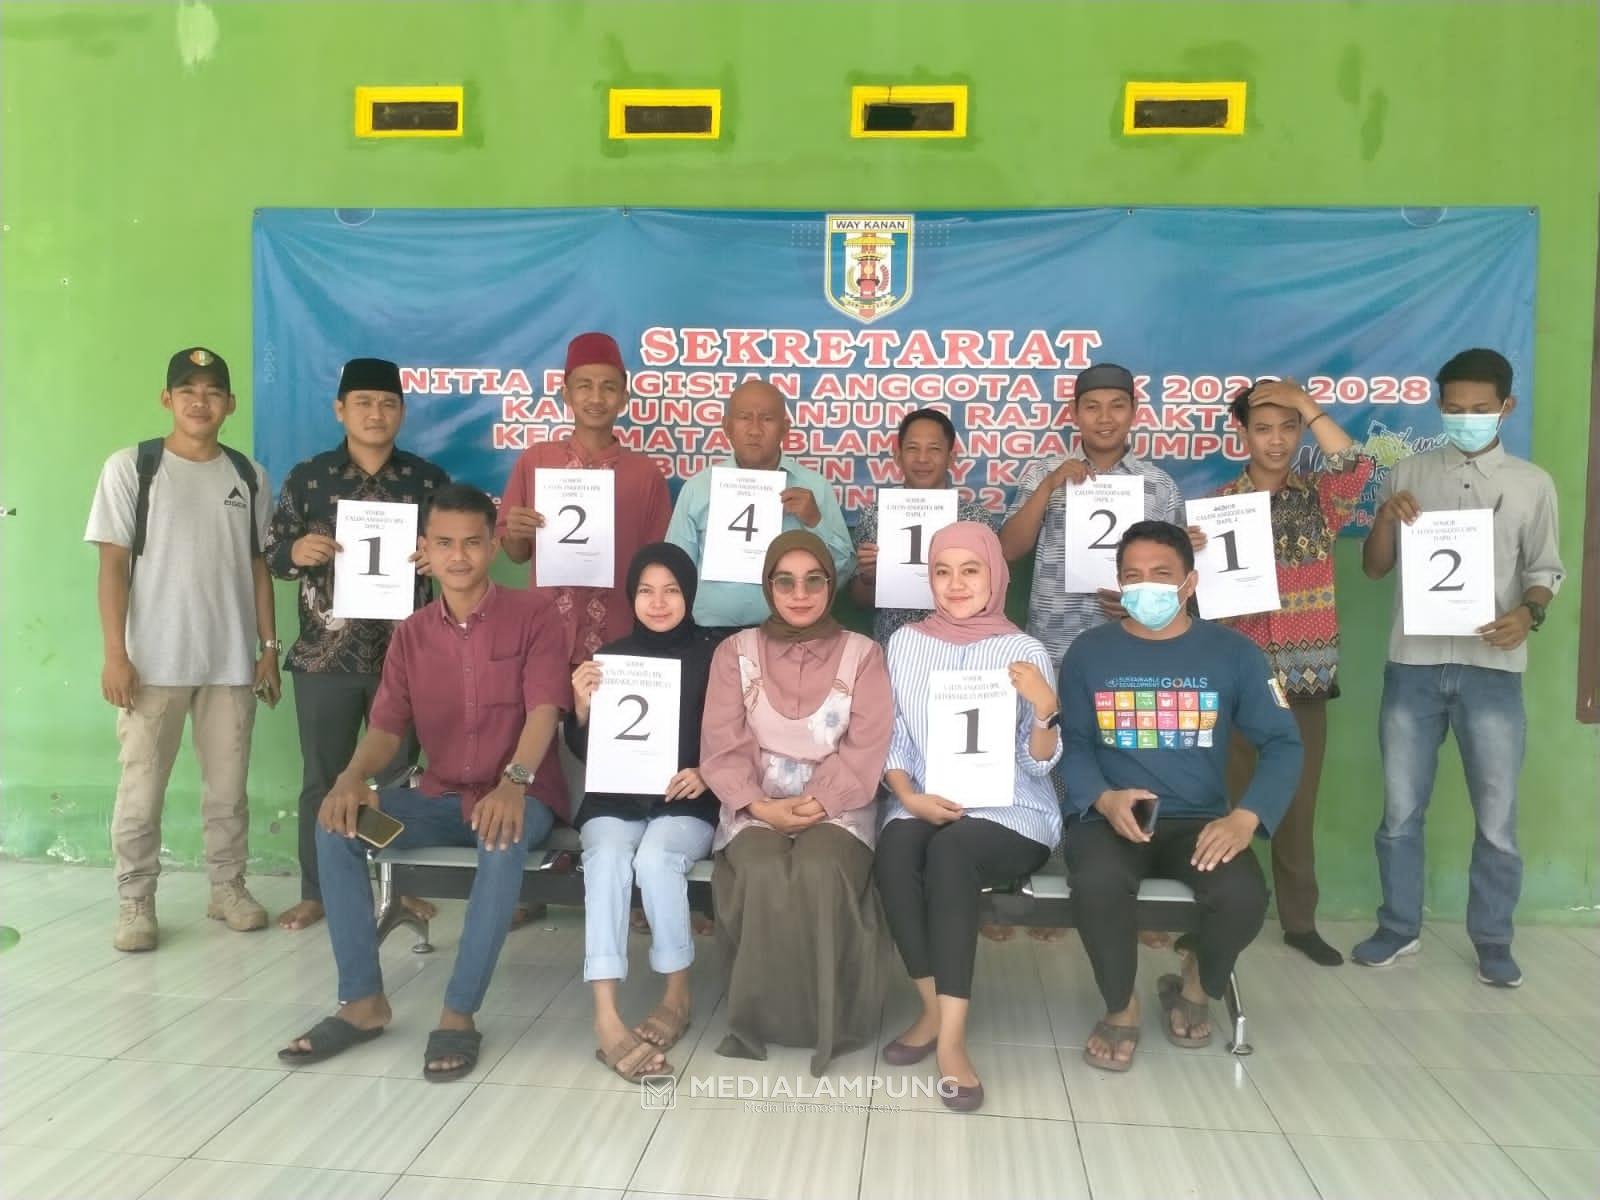 15 Peserta Ikuti Pemilihan BPK Kampung Tanjung Raja Sakti 